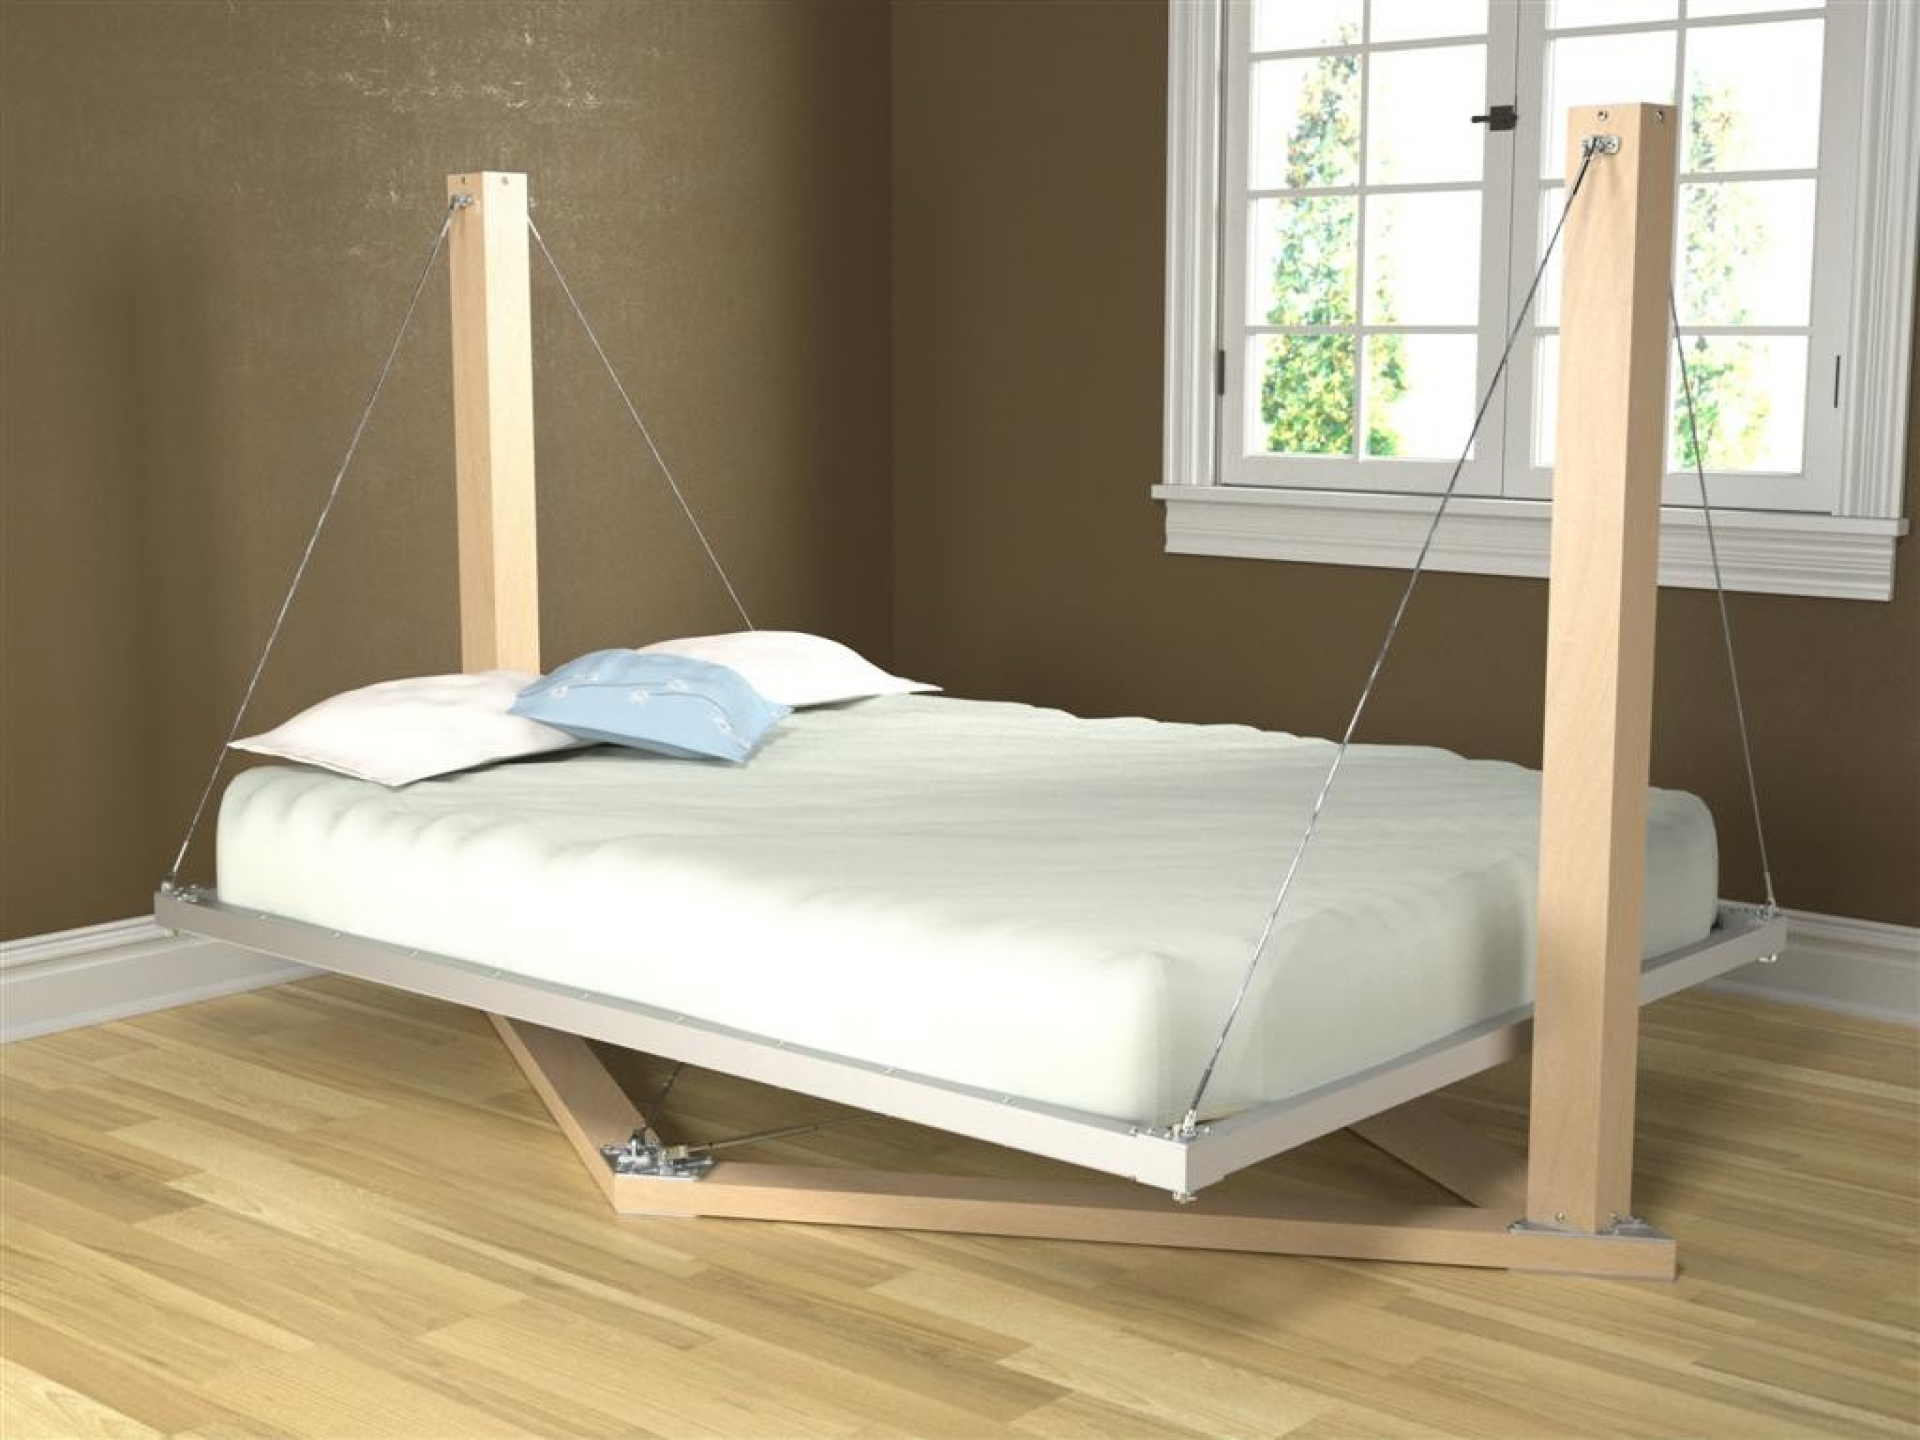 Idea kreatif diy perabot bilik tidur menggunakan pallet